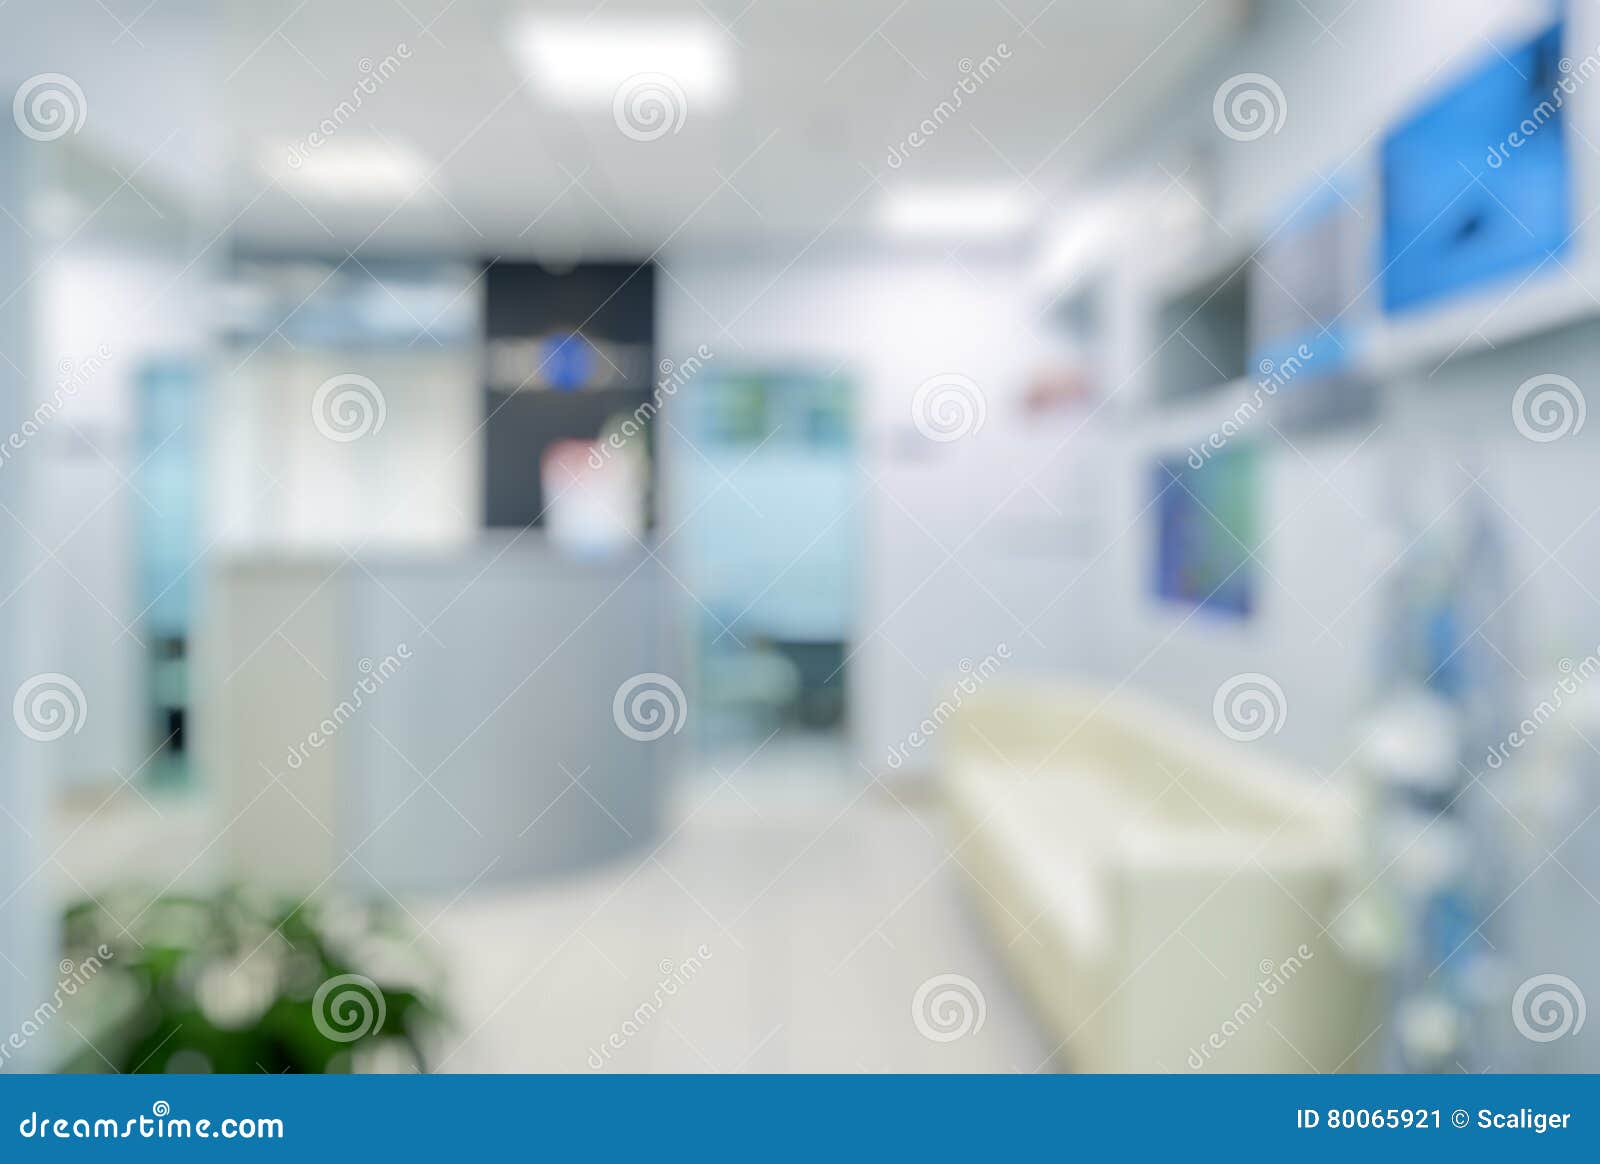 blurred clinic interior